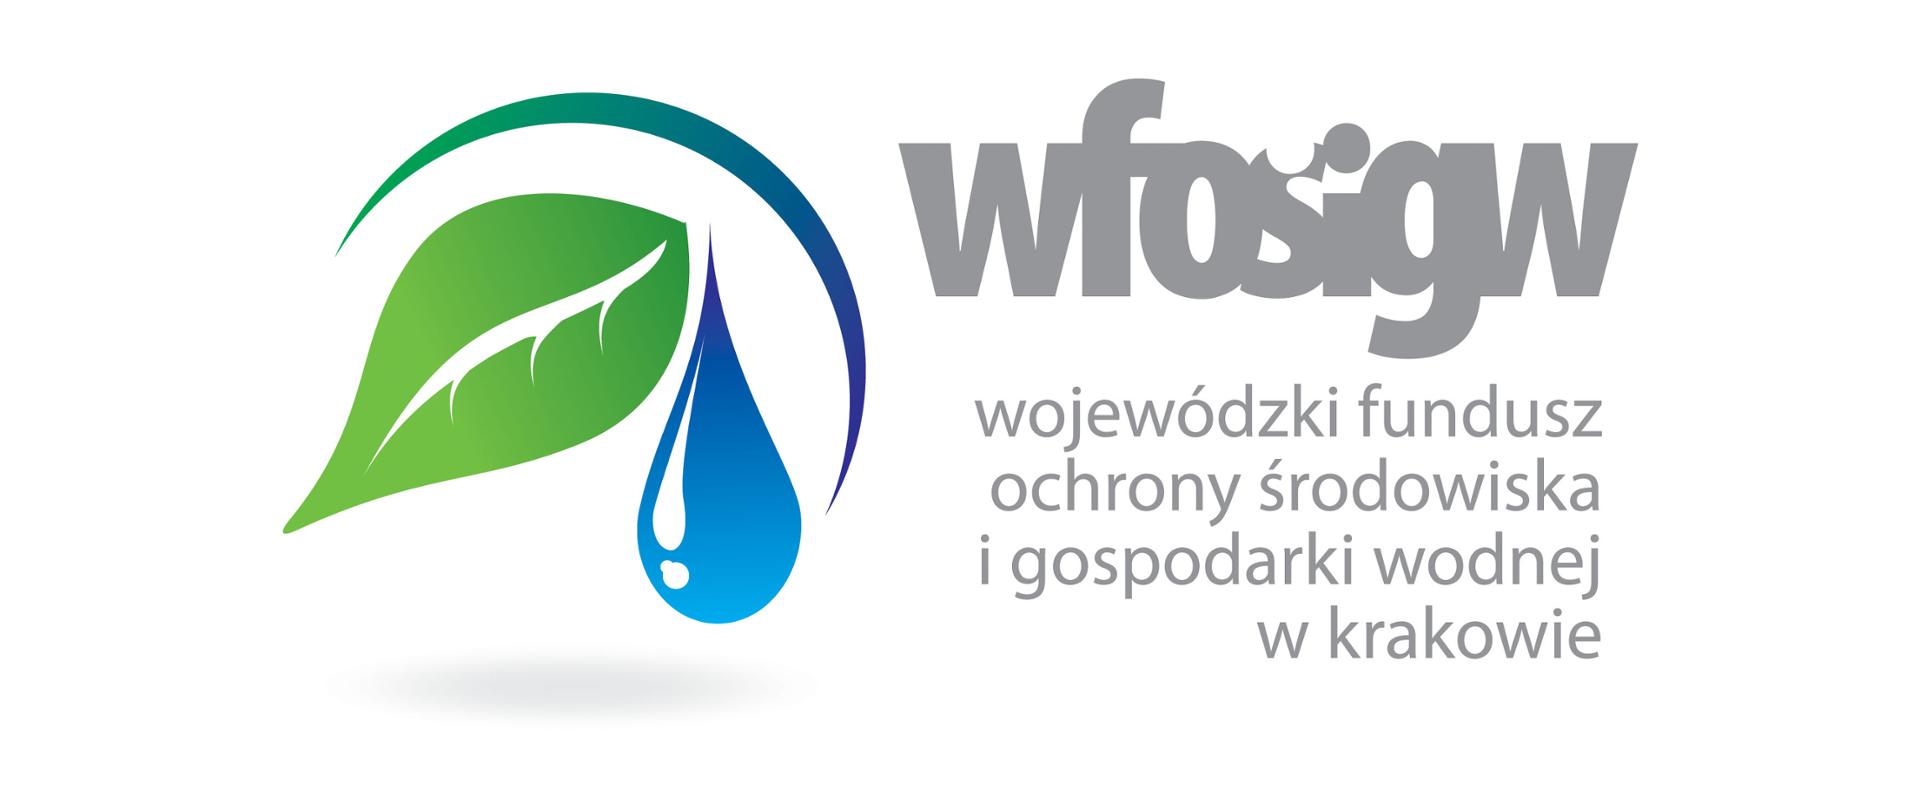 Logo Wojewódzkiego Funduszu Ochrony Środowiska i Gospodarki Wodnej w Krakowie